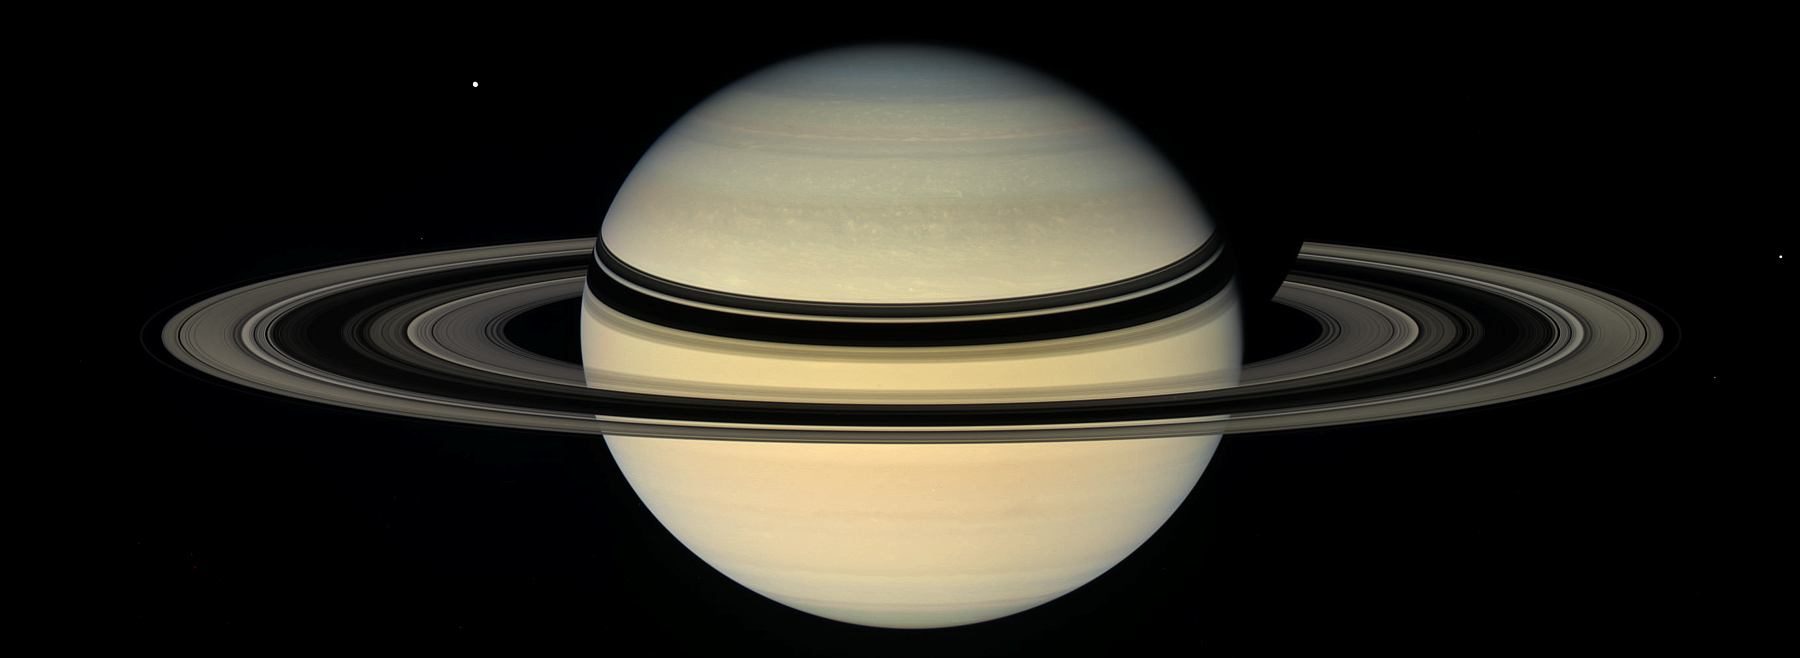 Saturne, image prise par la sonde Cassini en 2007